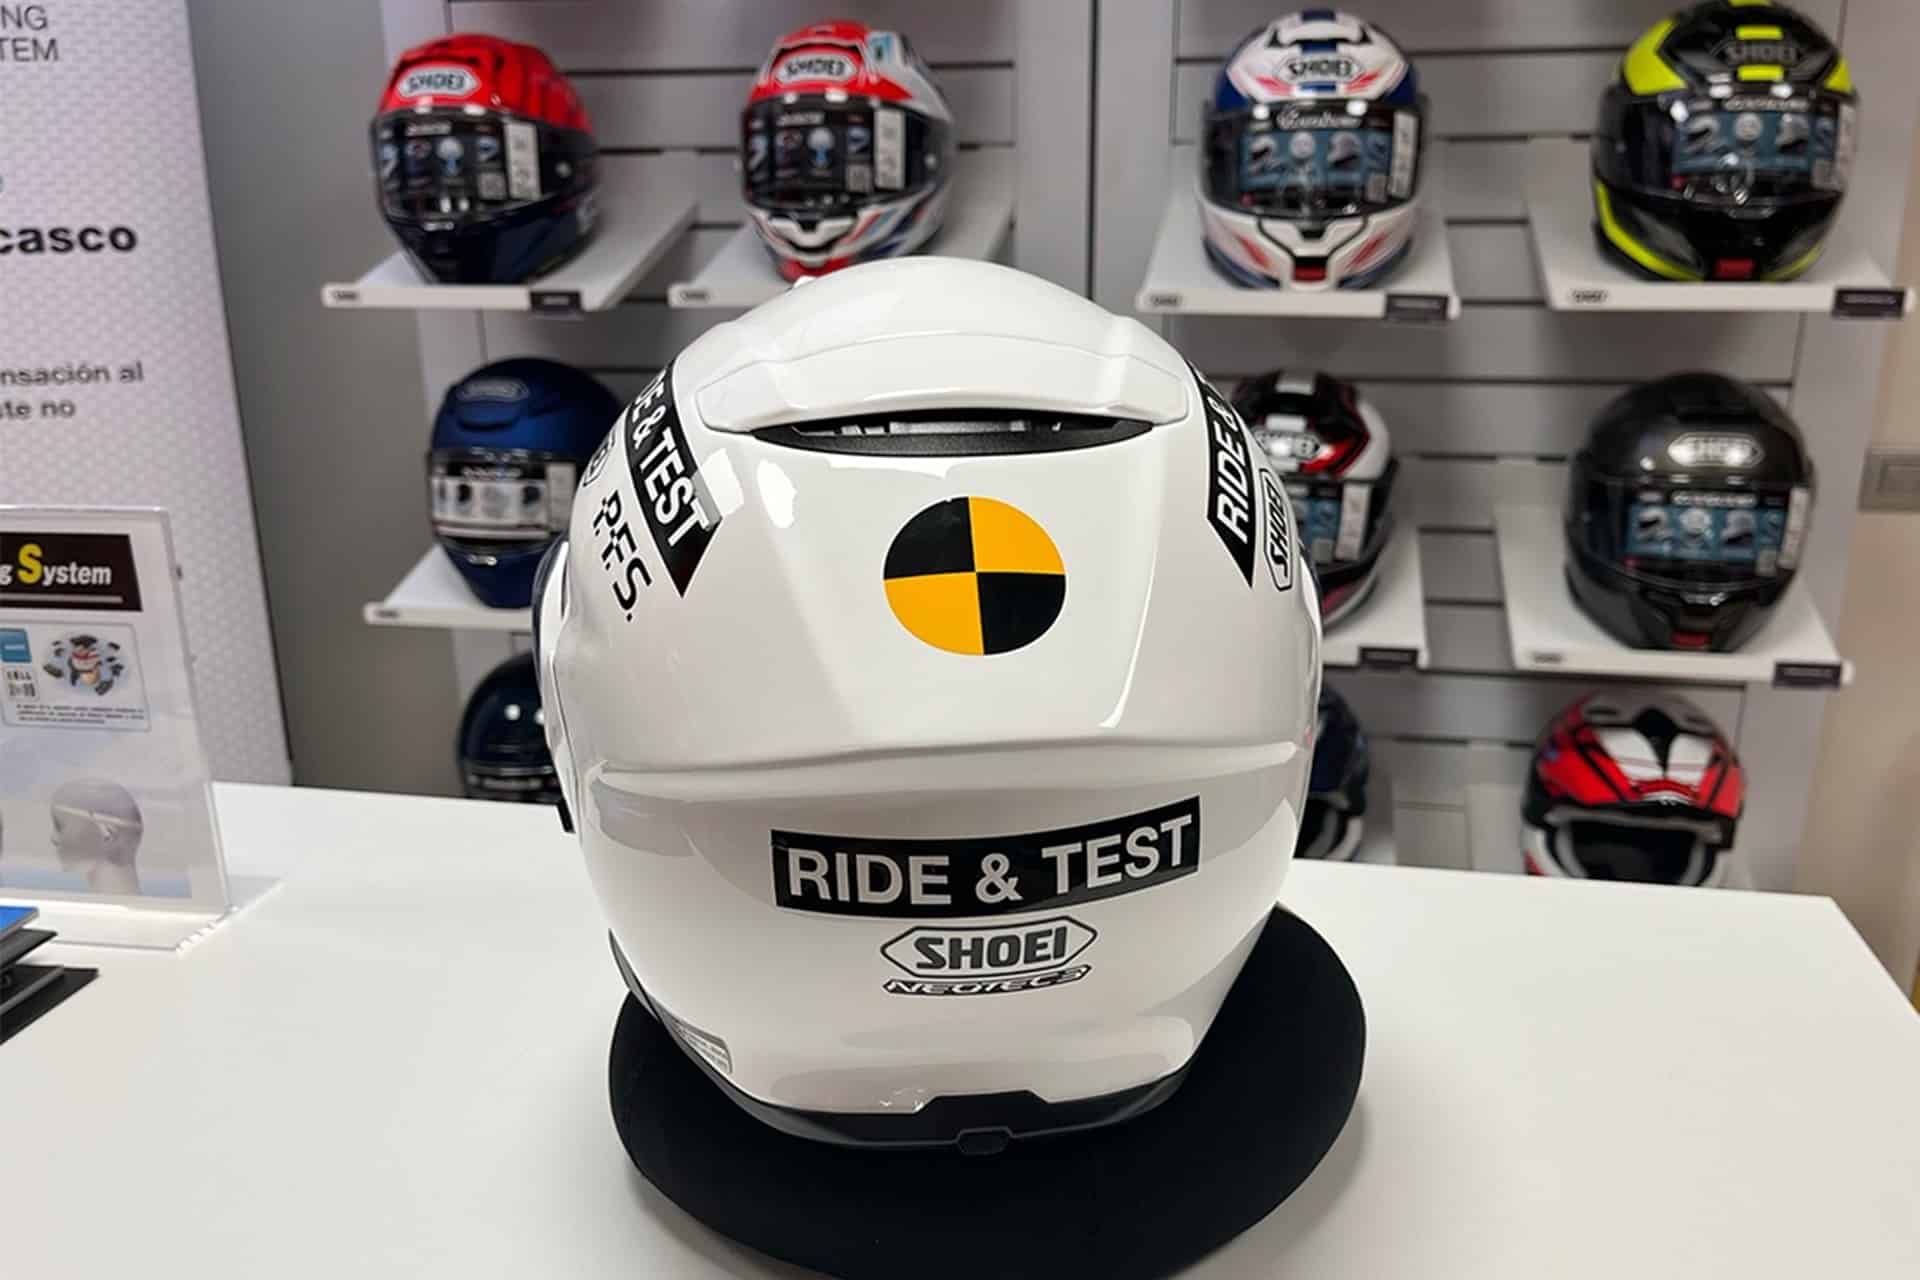 Servicio "Ride & Test" de Shoei: Una inteligente forma de adquirir nuestro futuro casco